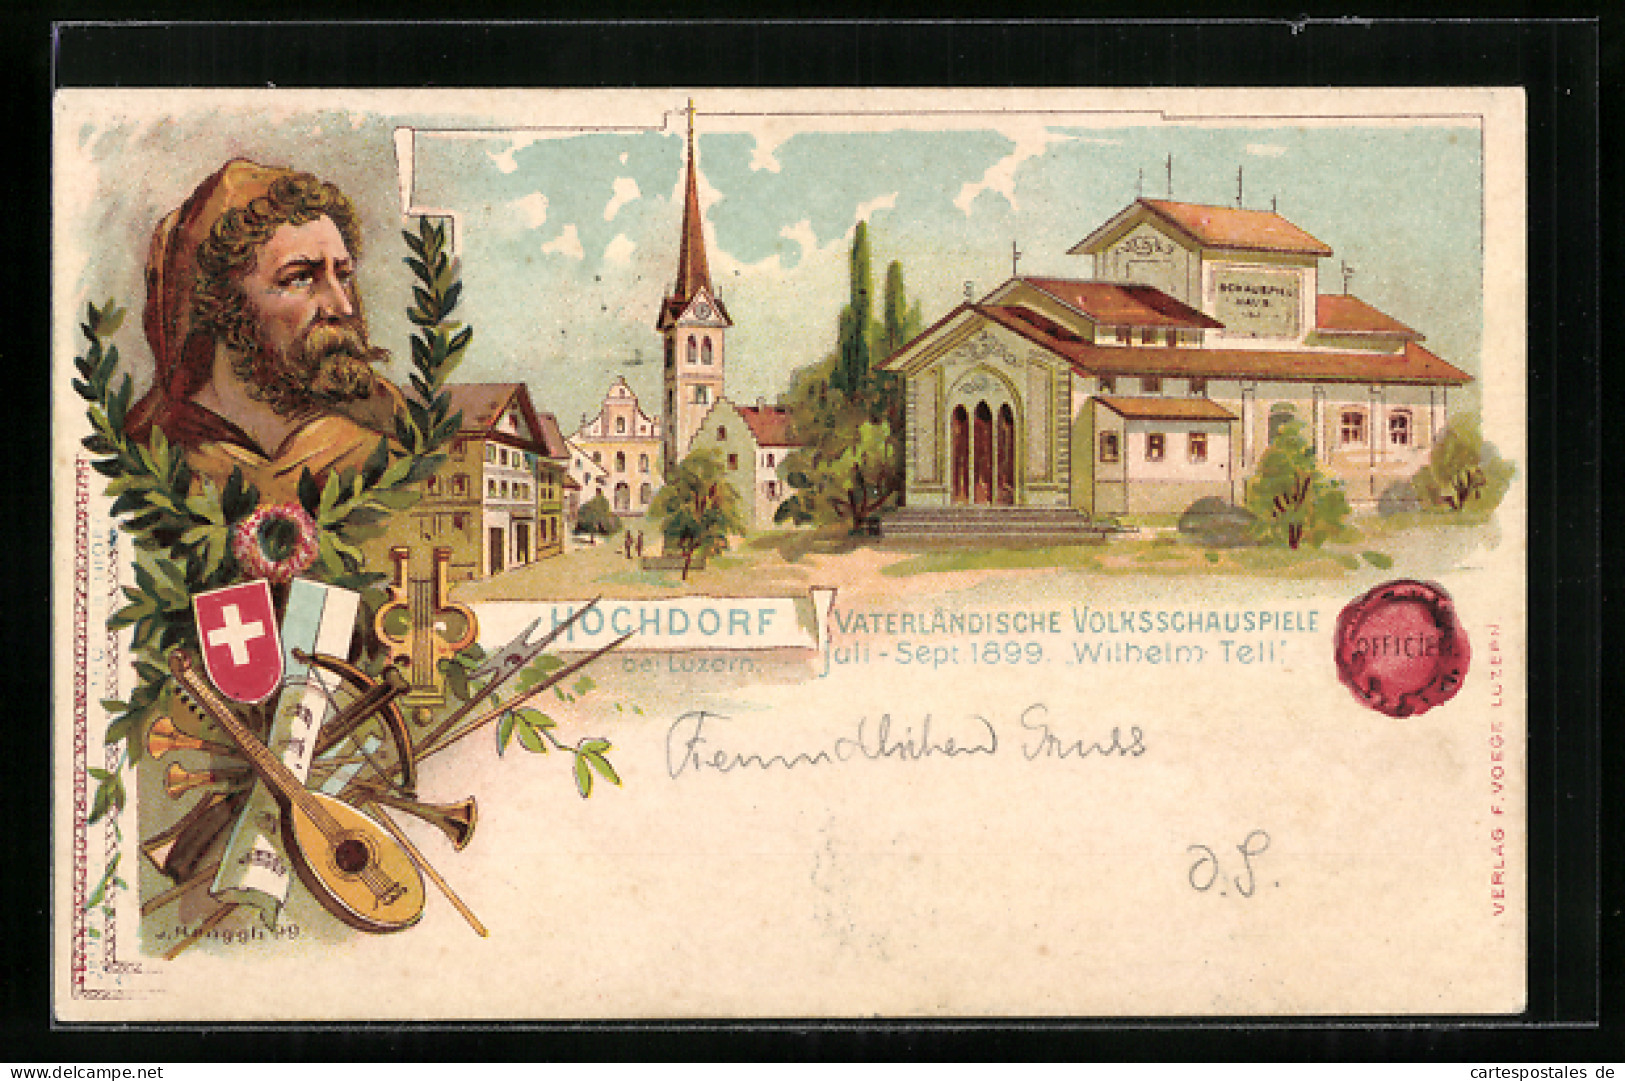 Lithographie Hochdorf, Vaterländische Volksschauspiele 1899 Wilhelm Tell, Schauspielhaus  - Hochdorf